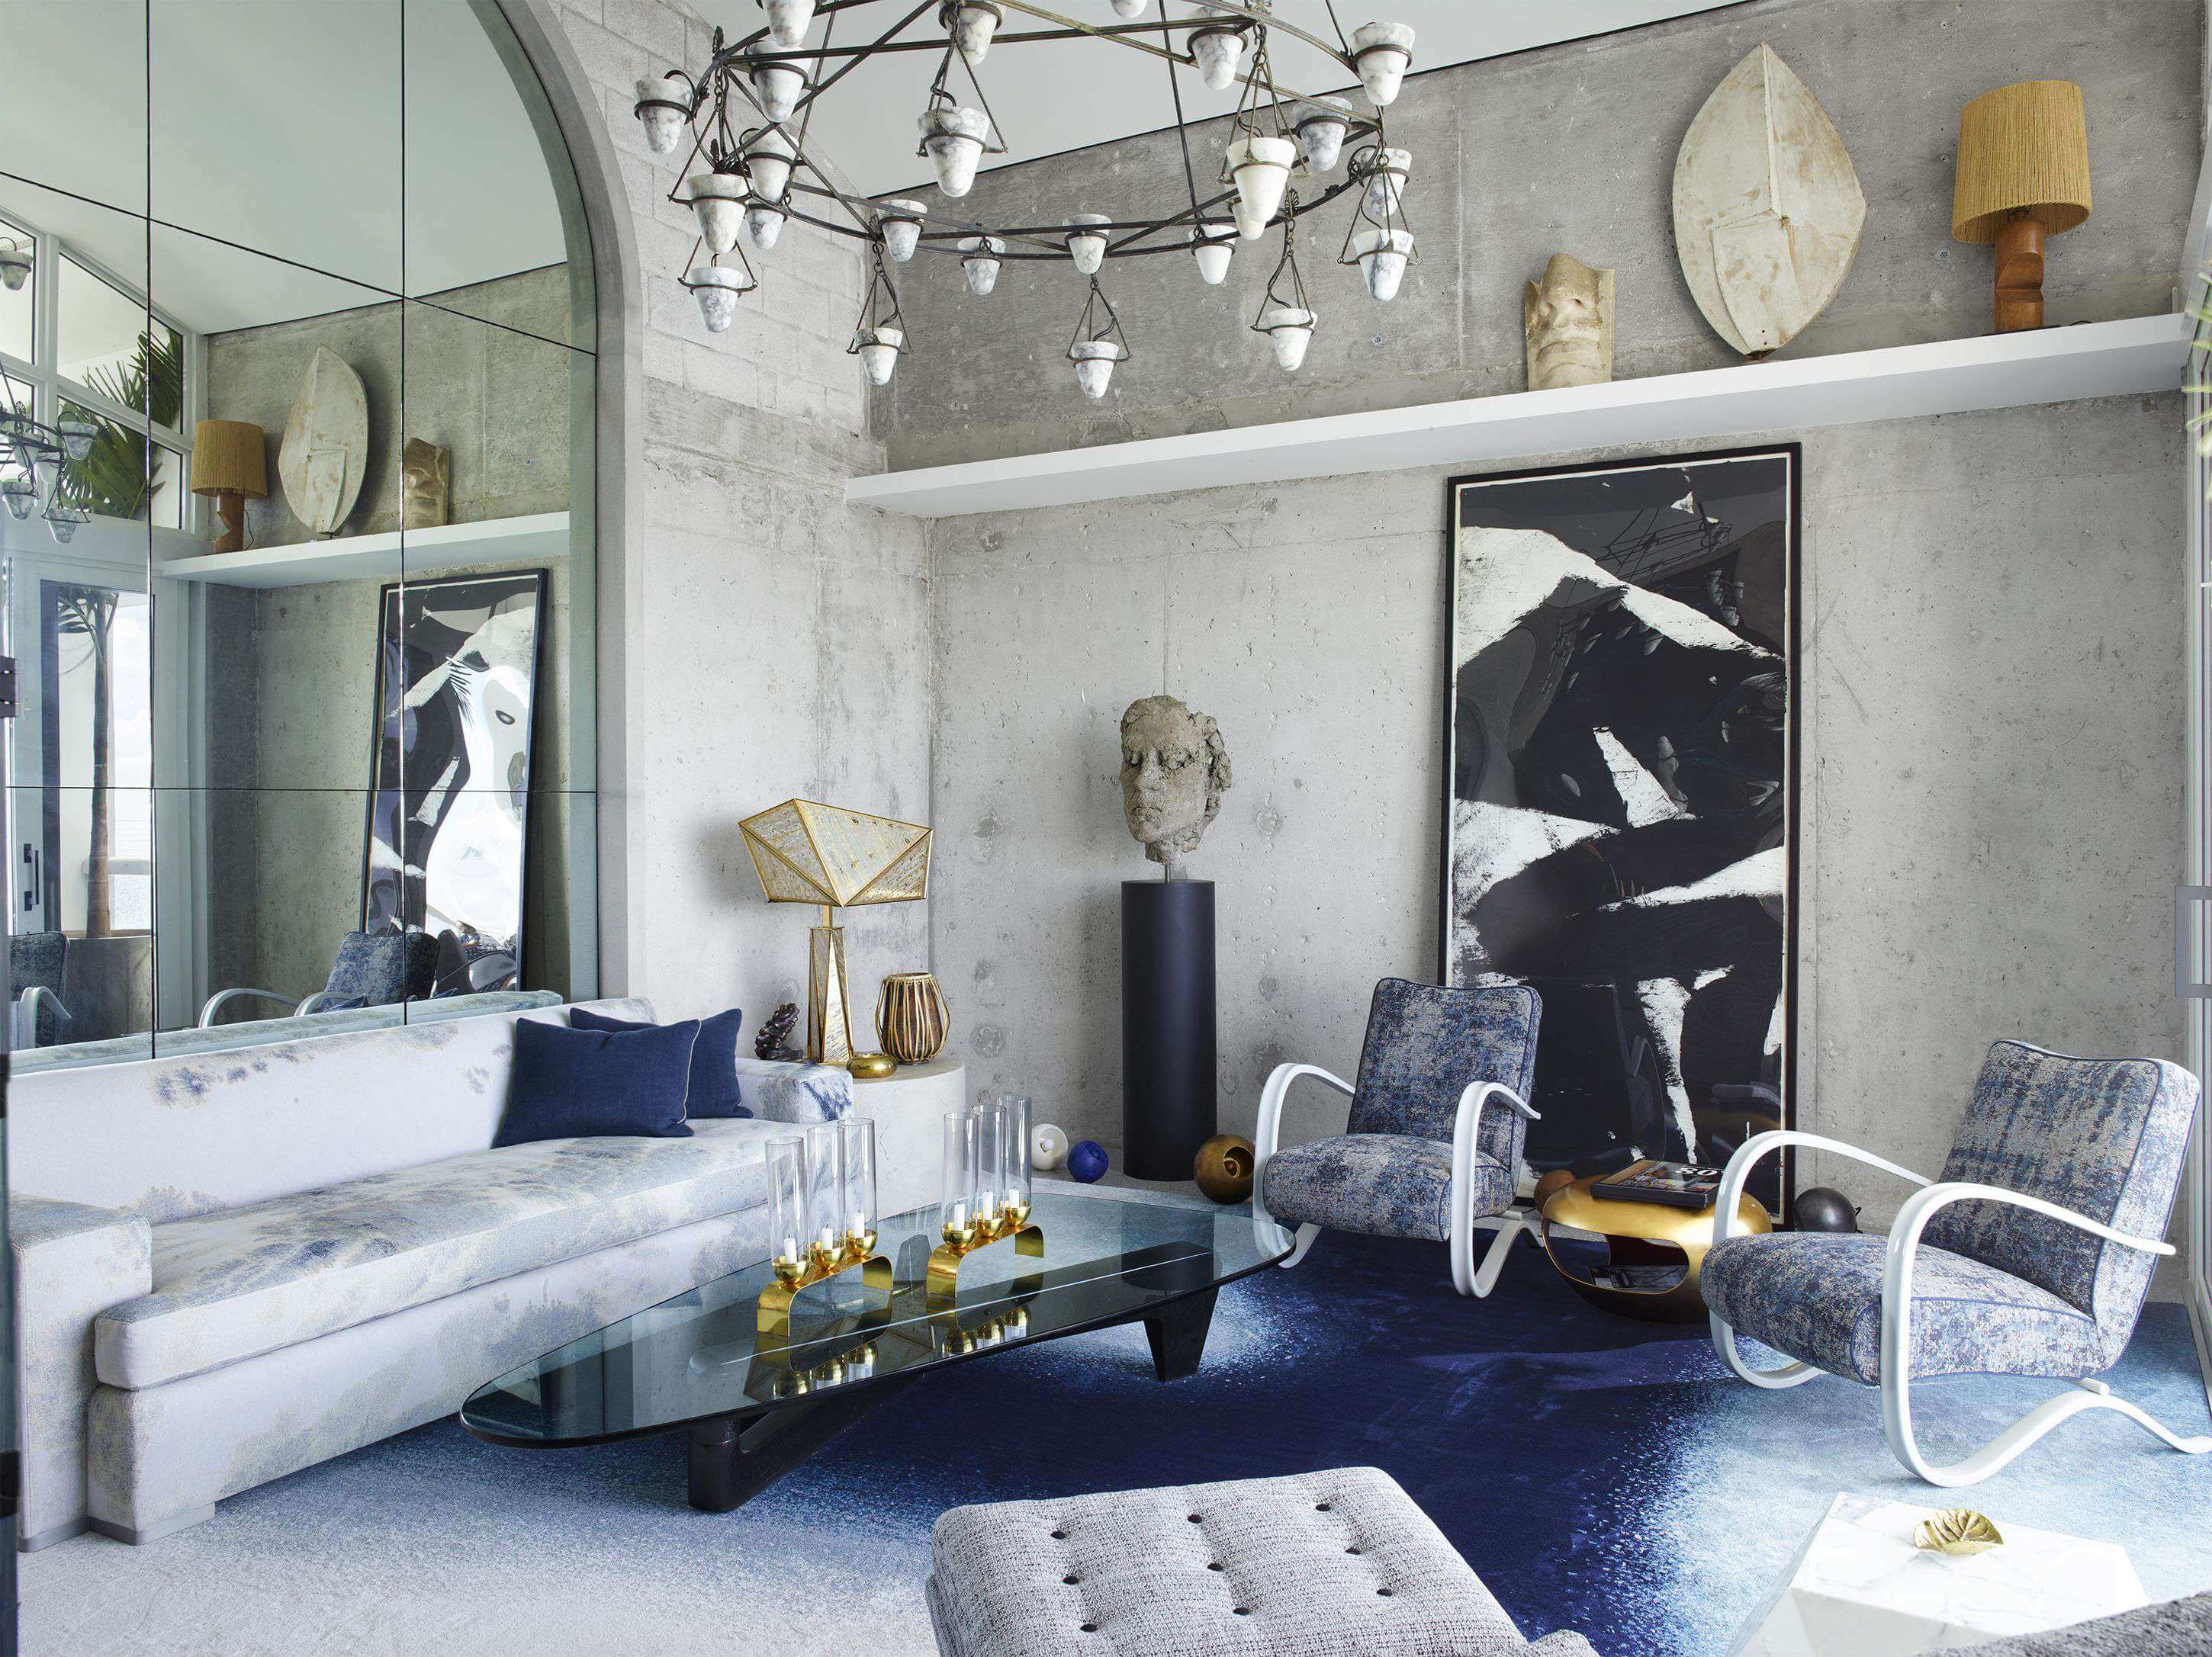 Alabaster Chandelier at Living Room Decor Ideas